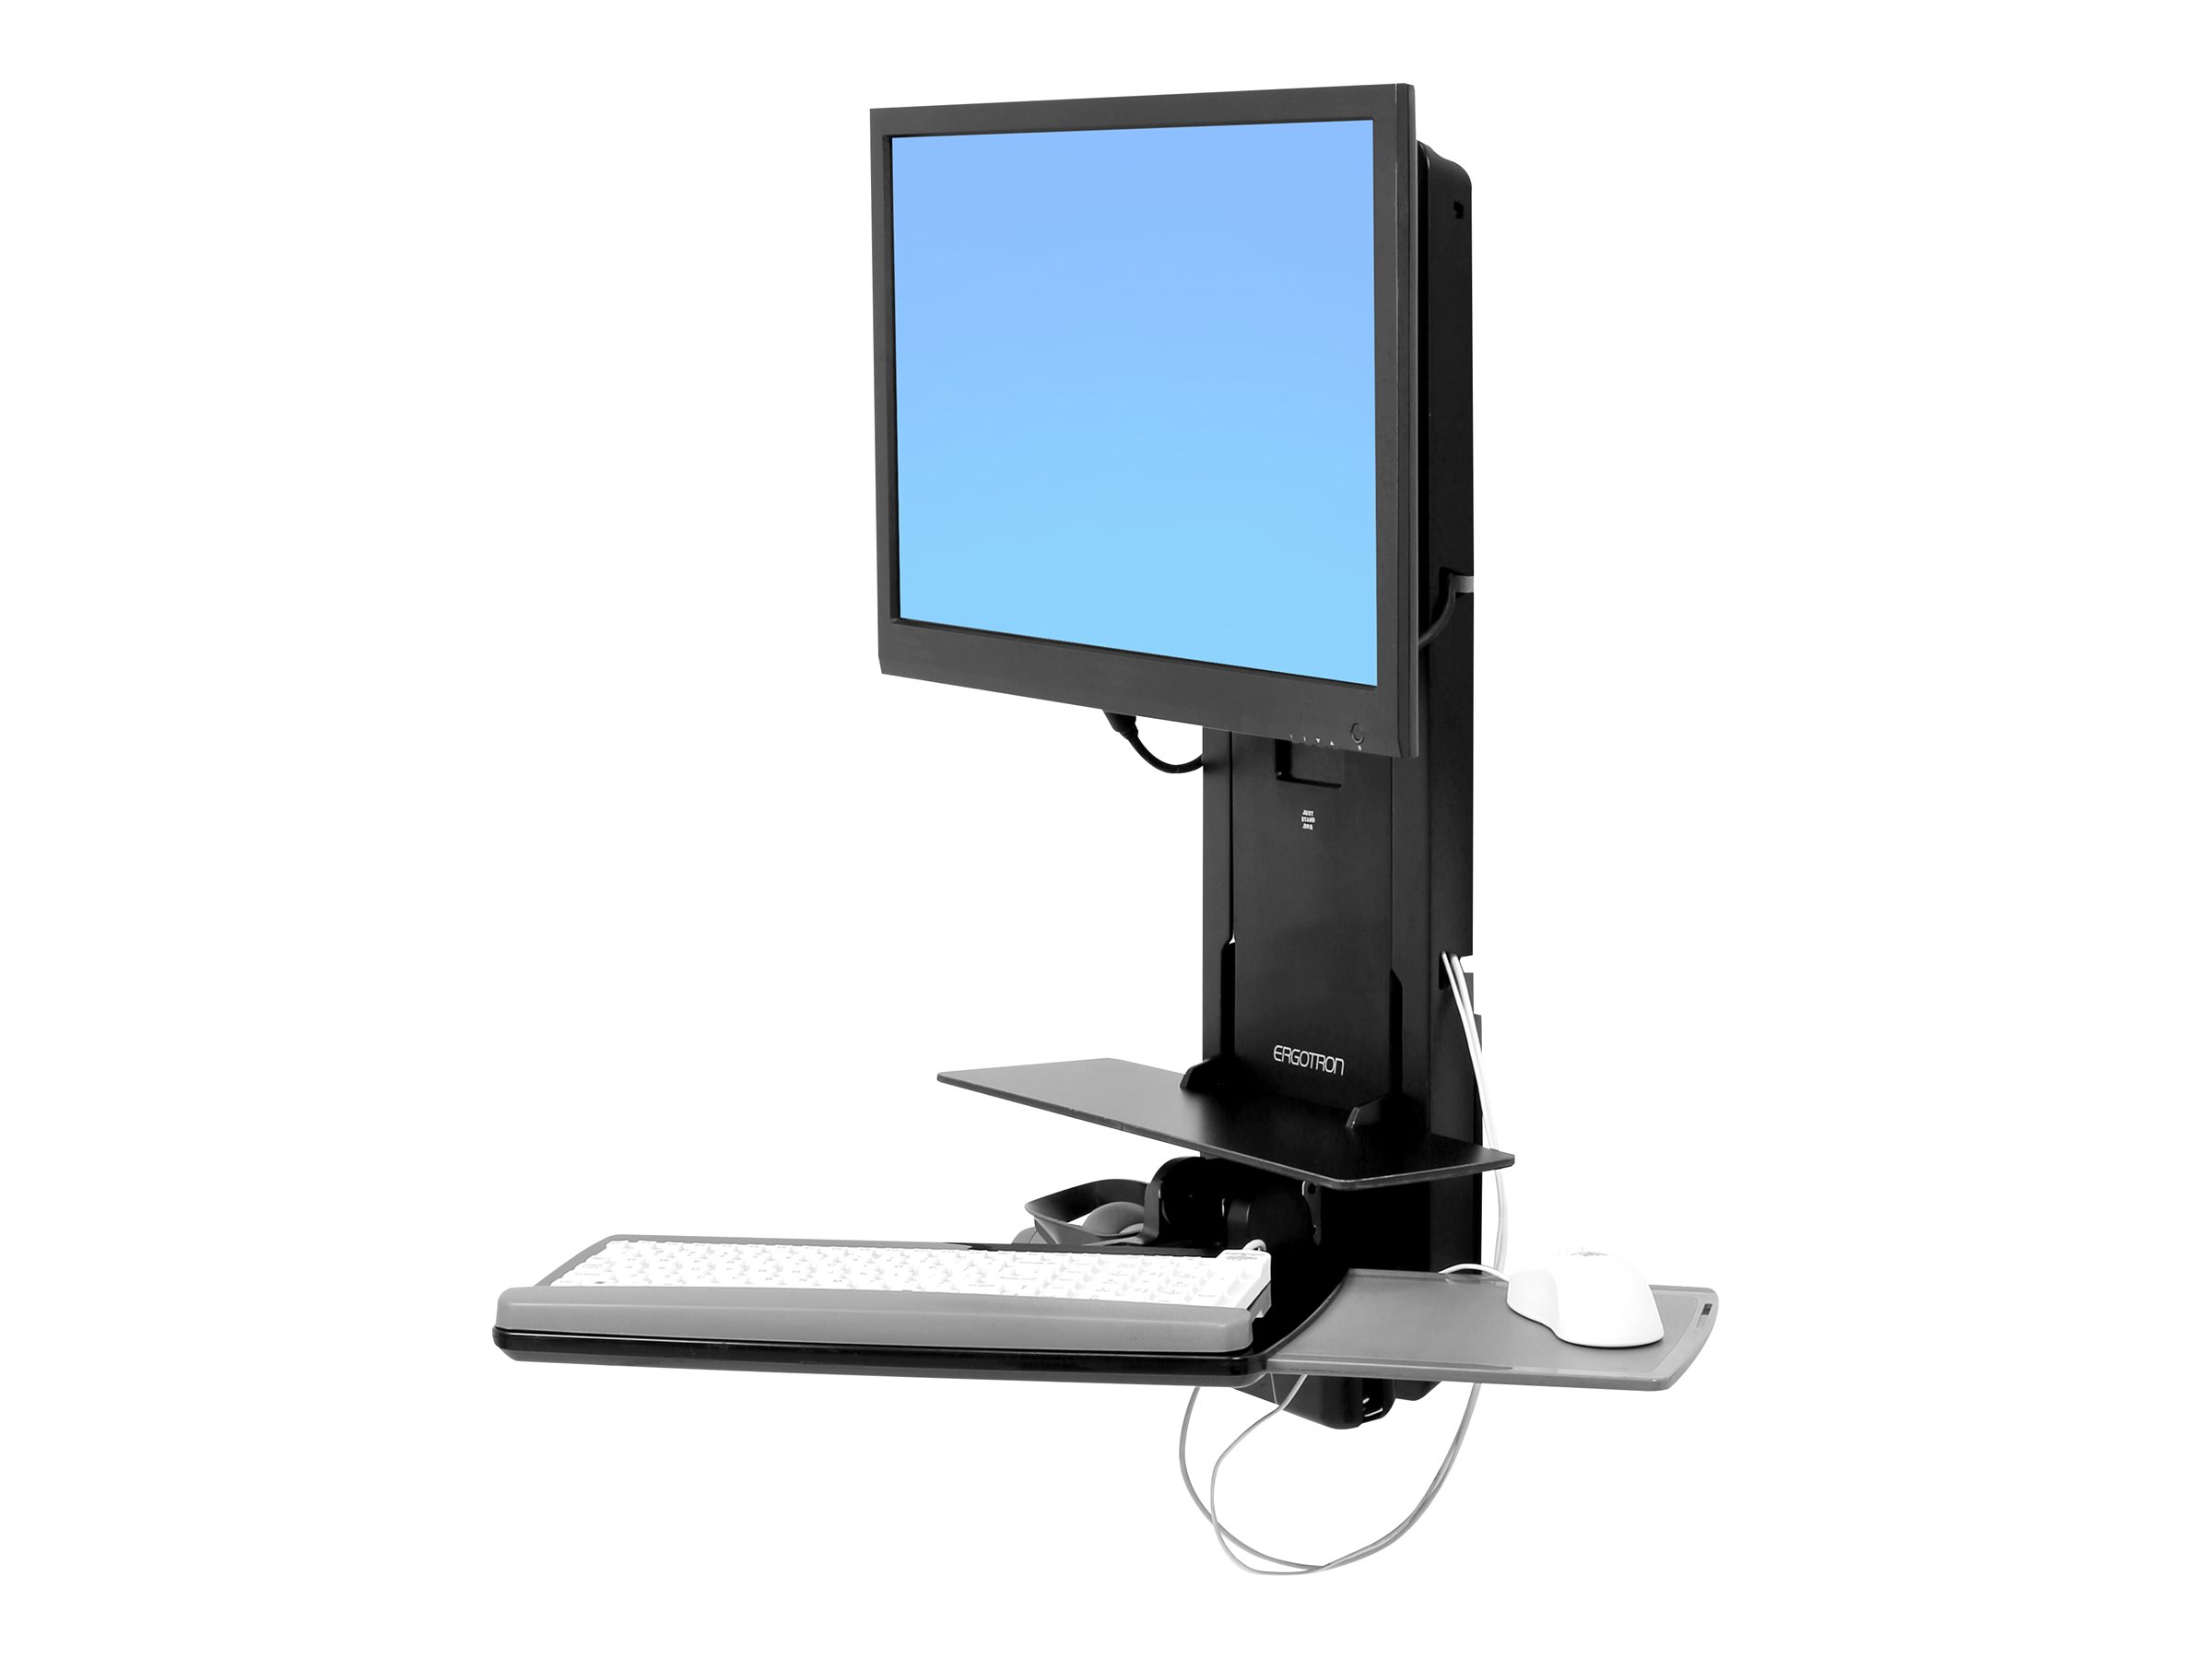 Ergotron Sit-Stand Vertical Lift, Patient Room - Kit de montage (repose-poignets, pochette pour souris, levage vertical du panneau, support de lecteur de codes à barres, tiroir à clavier, bras pour moniteur, plateau de souris coulissant) - pour écran LCD/équipement PC - médical - noir - Taille d'écran : 24" - montable sur mur - 61-080-085 - Accessoires pour écran